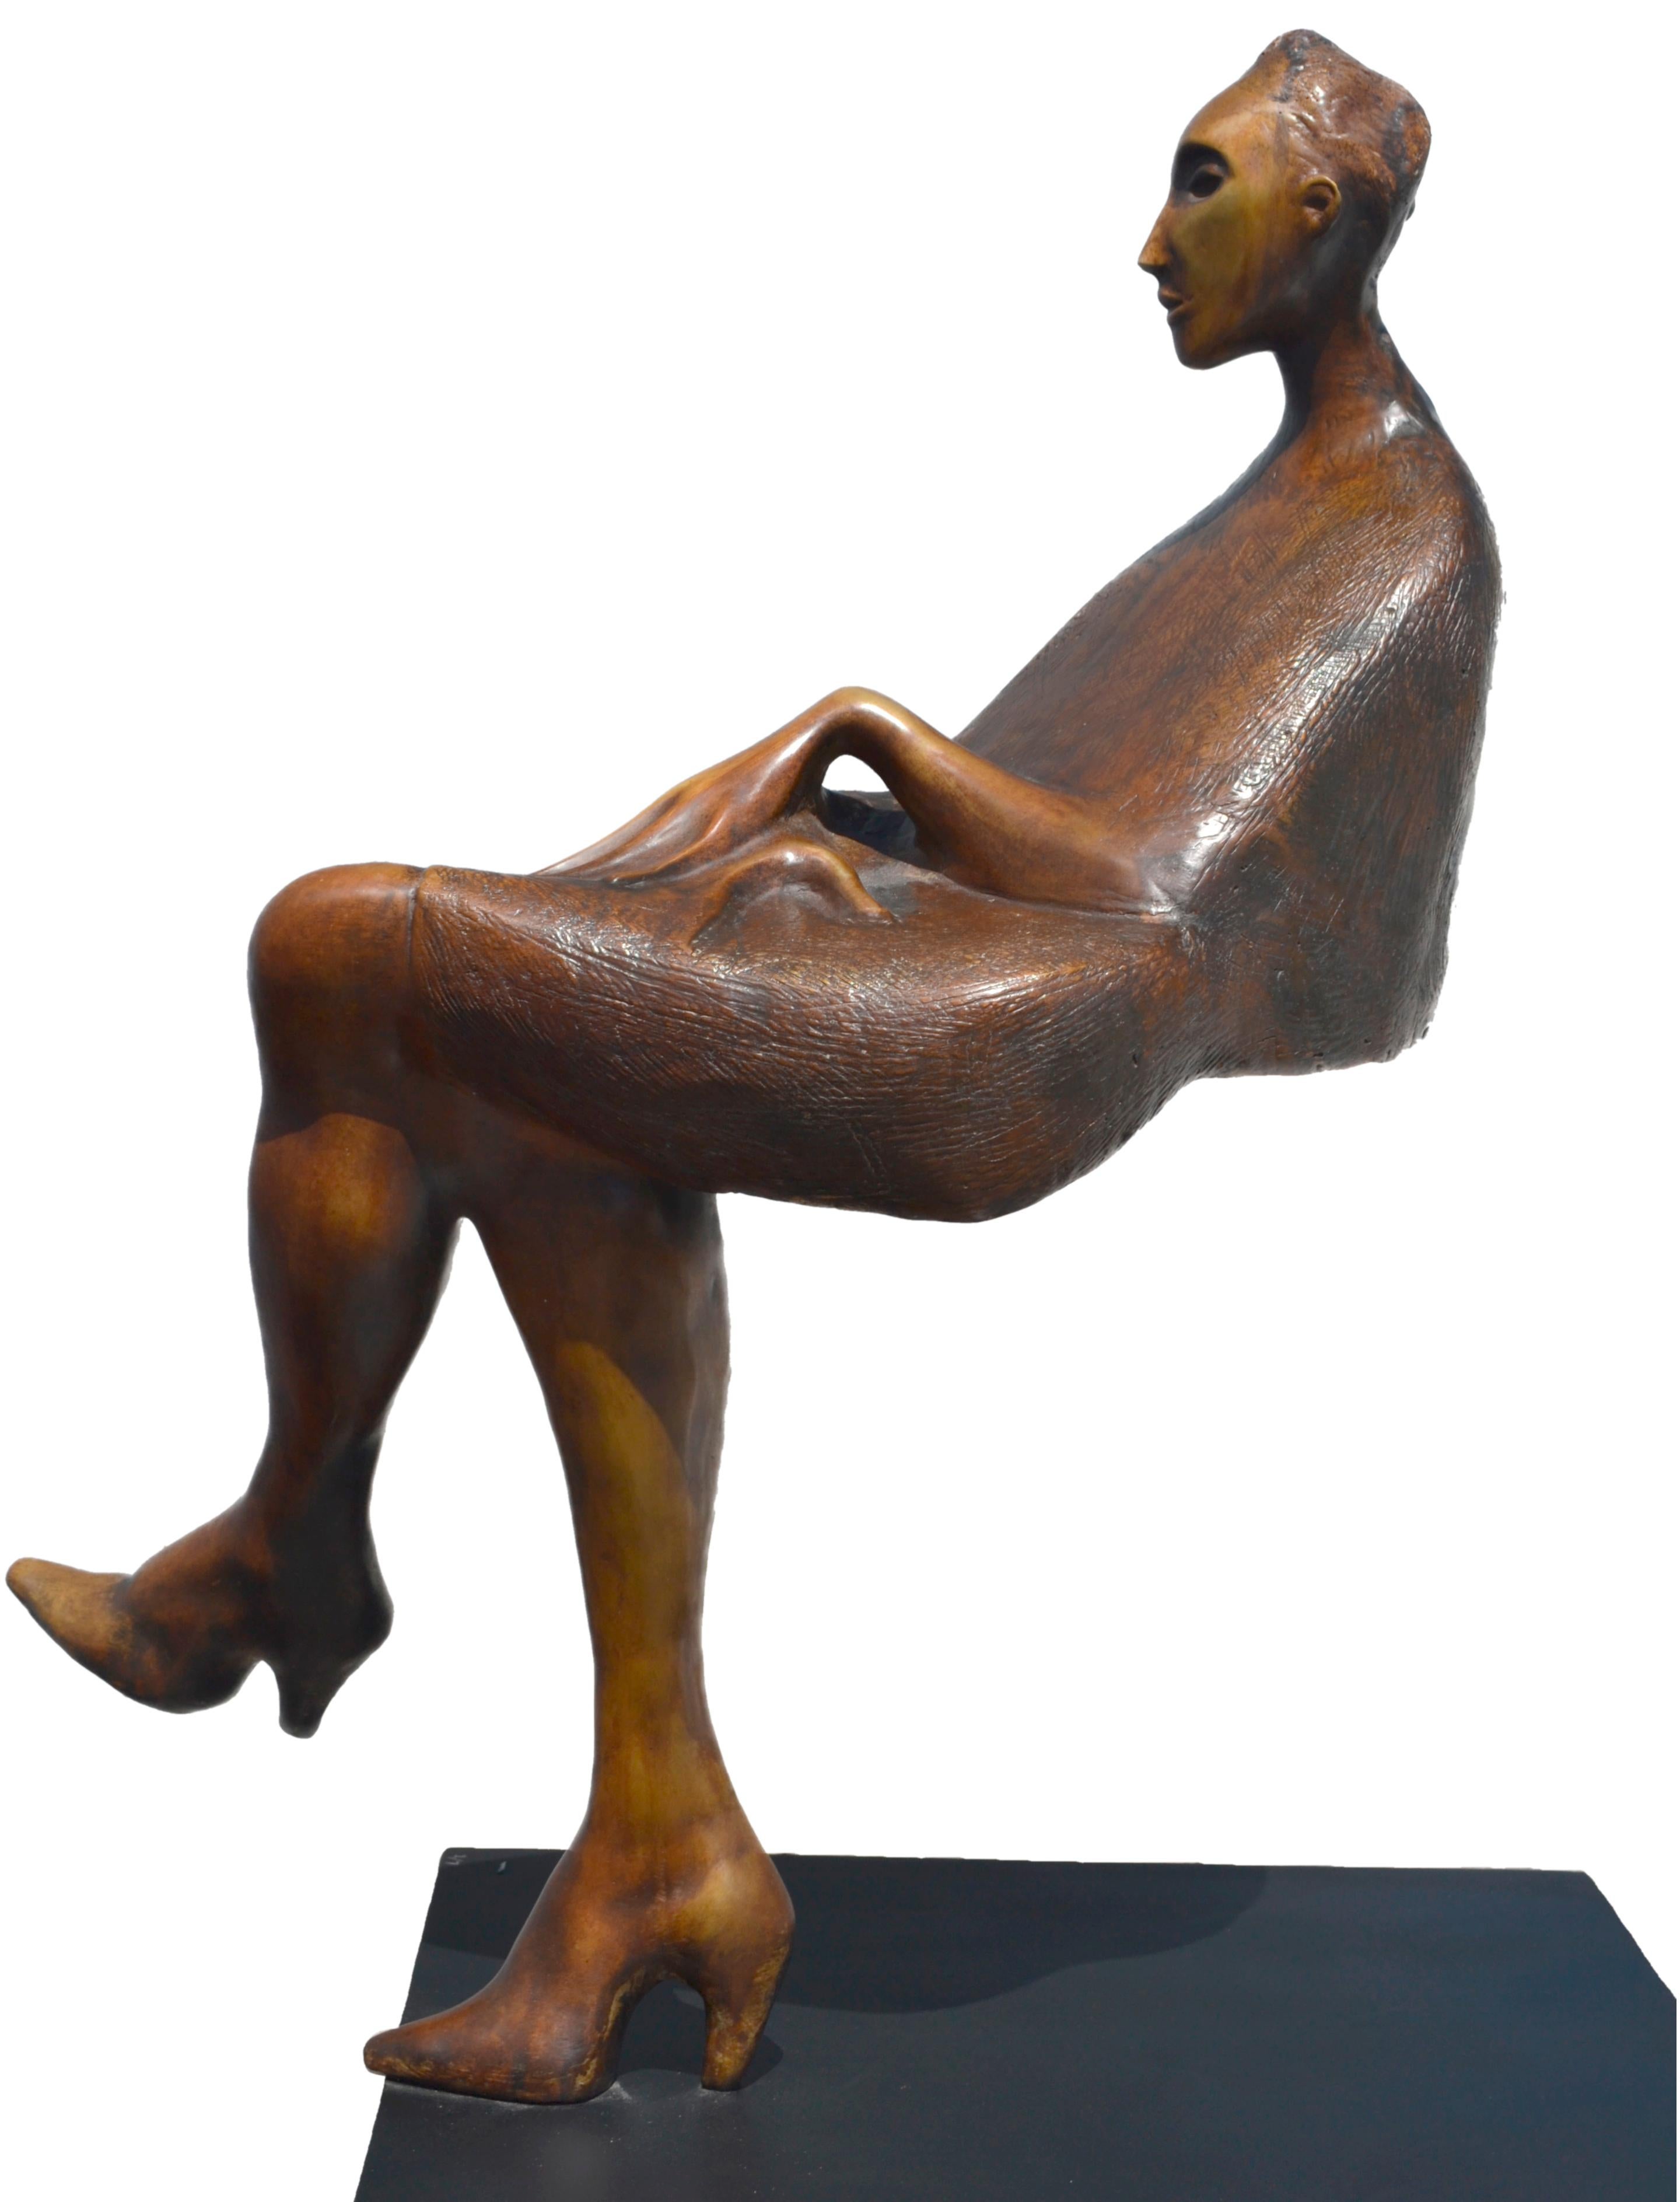  Jorge Segu,  Ilusion silla, 2000, bronze, édition de 7 exemplaires, 78 x 90 x 33 cm  - Or Figurative Sculpture par Jorge Seguí 